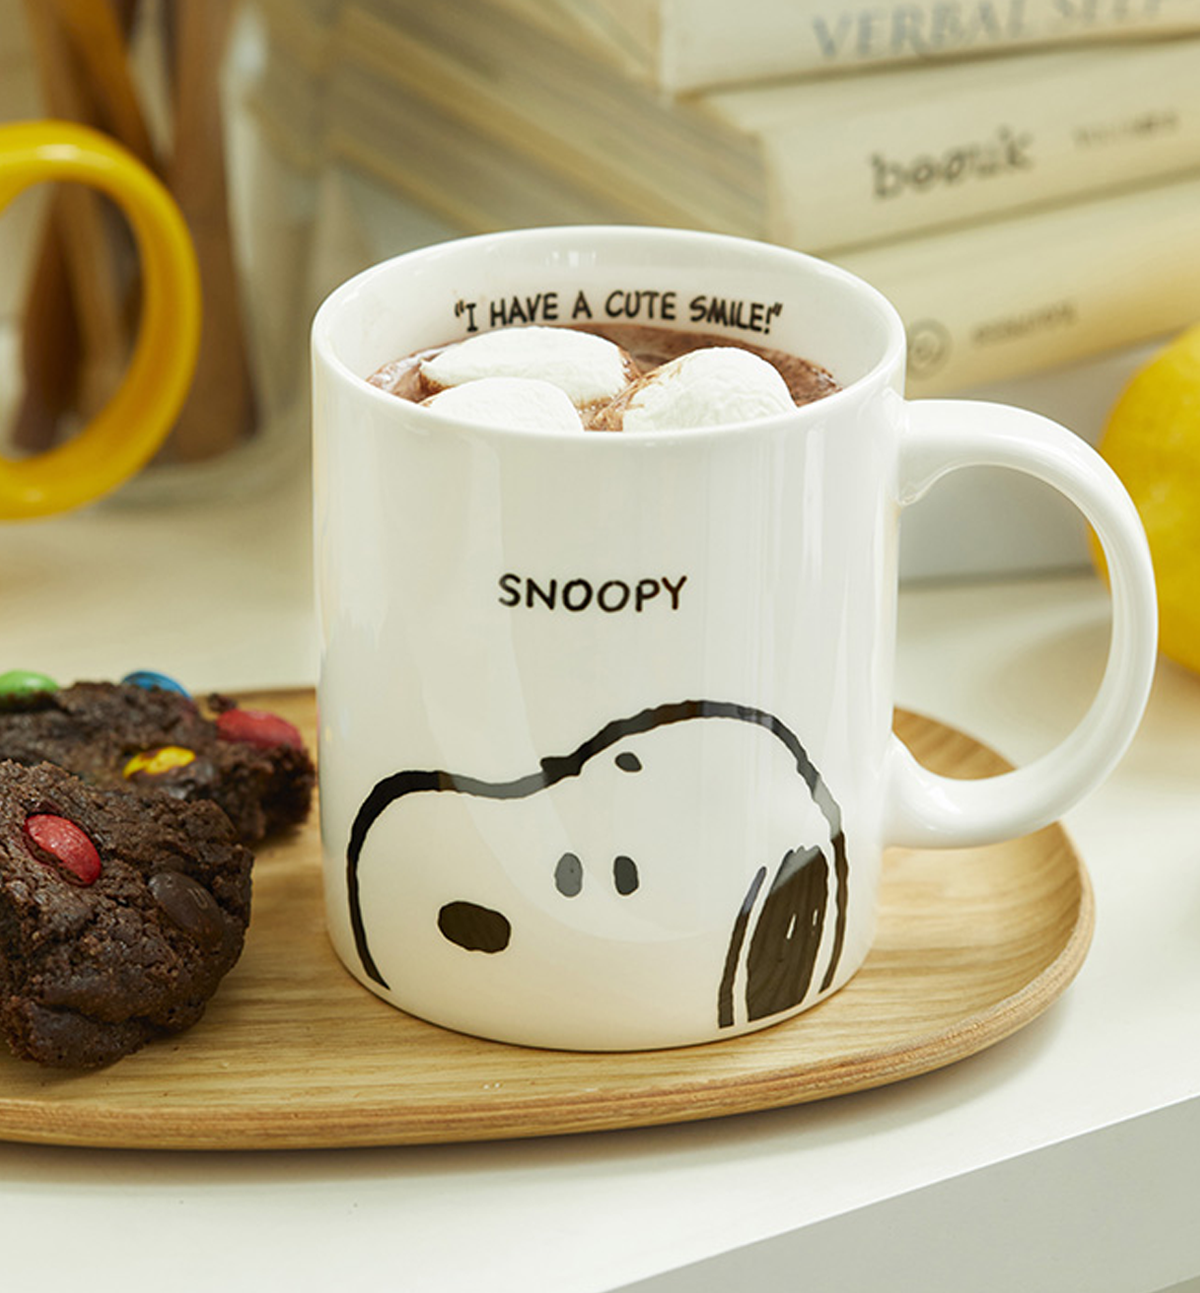 Snoopy & Woodstock Face Mug Set [2 Mugs]